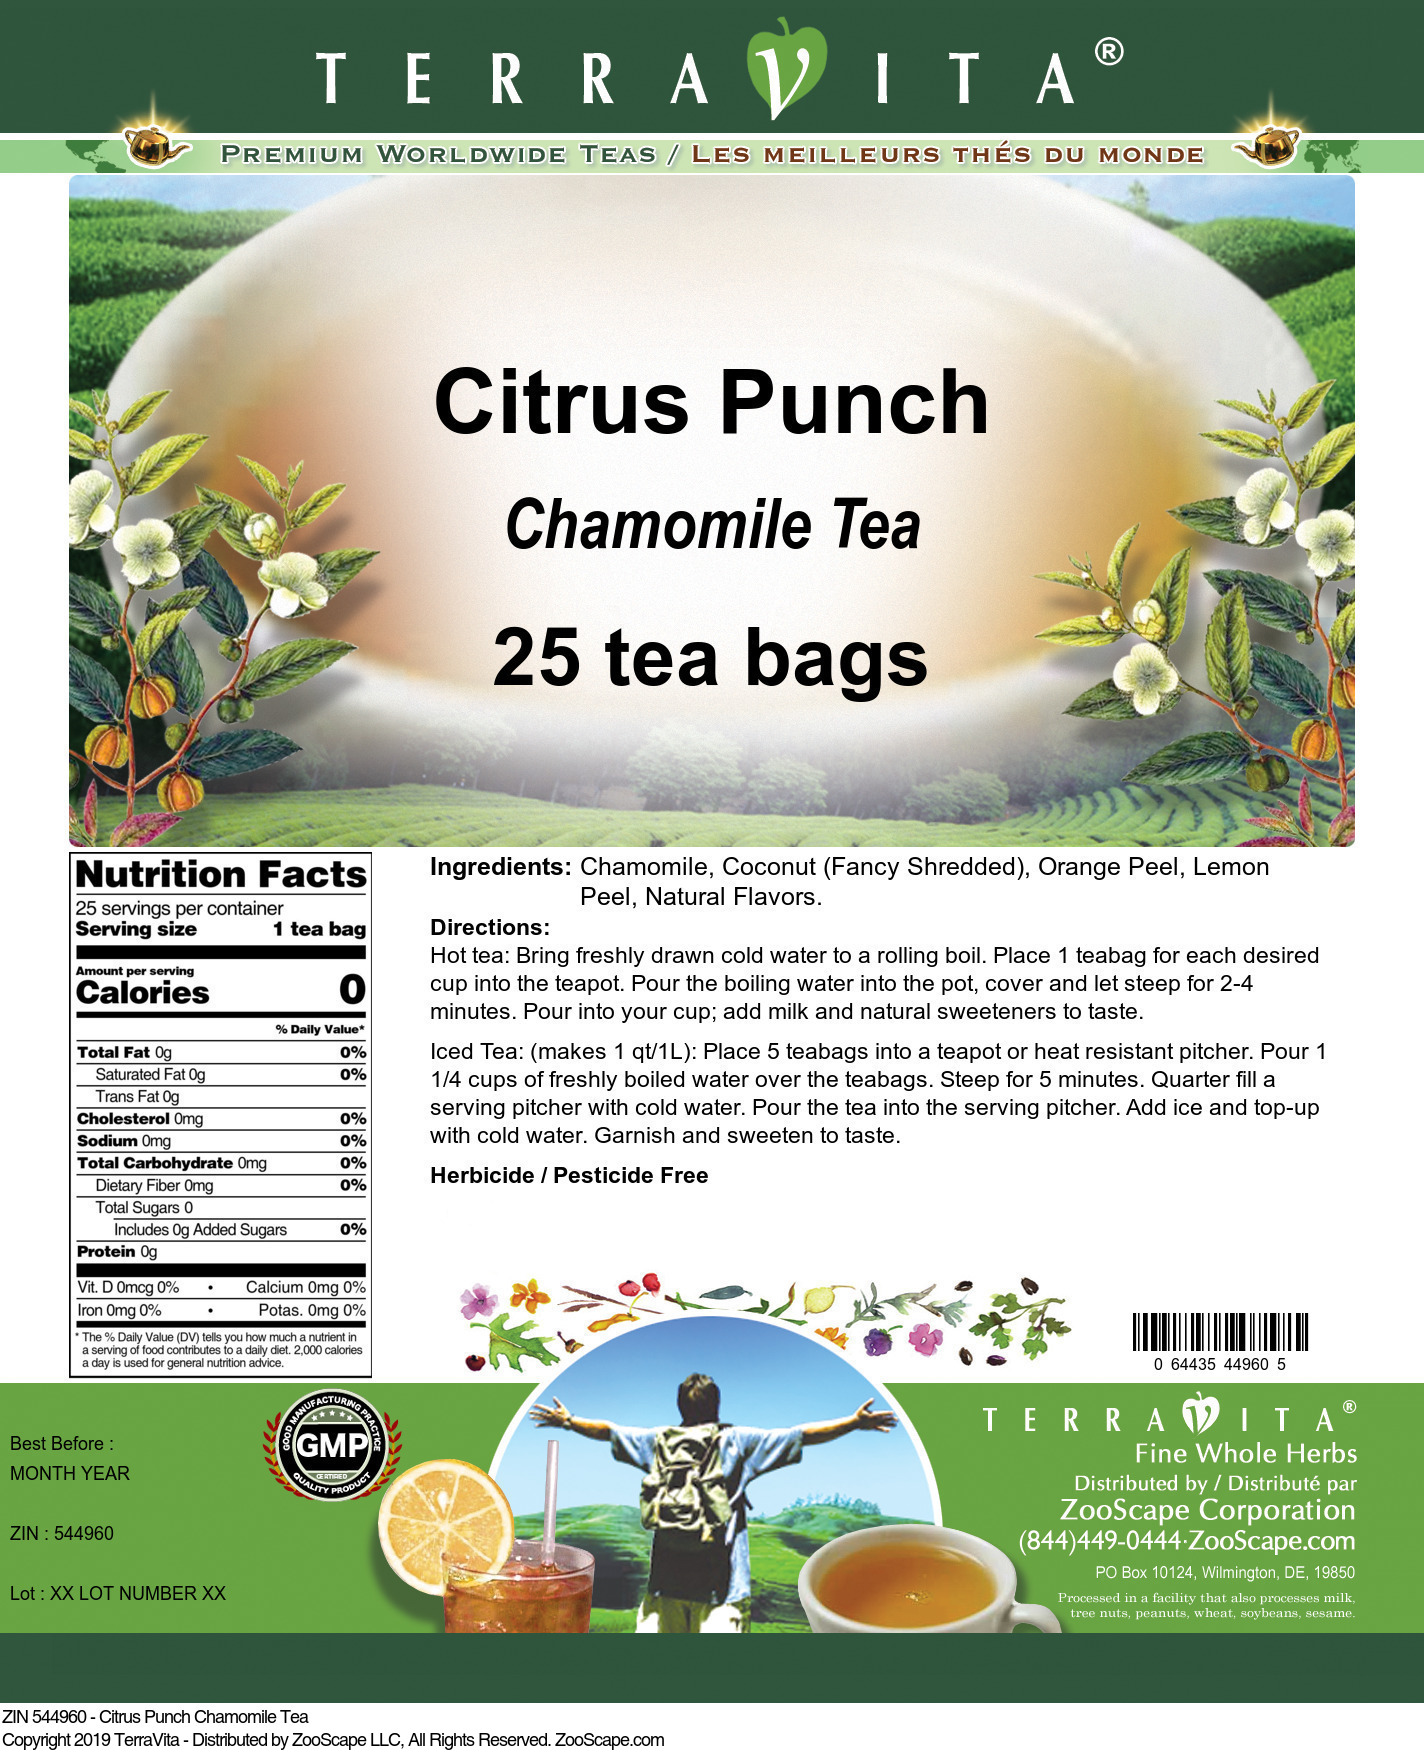 Citrus Punch Chamomile Tea - Label